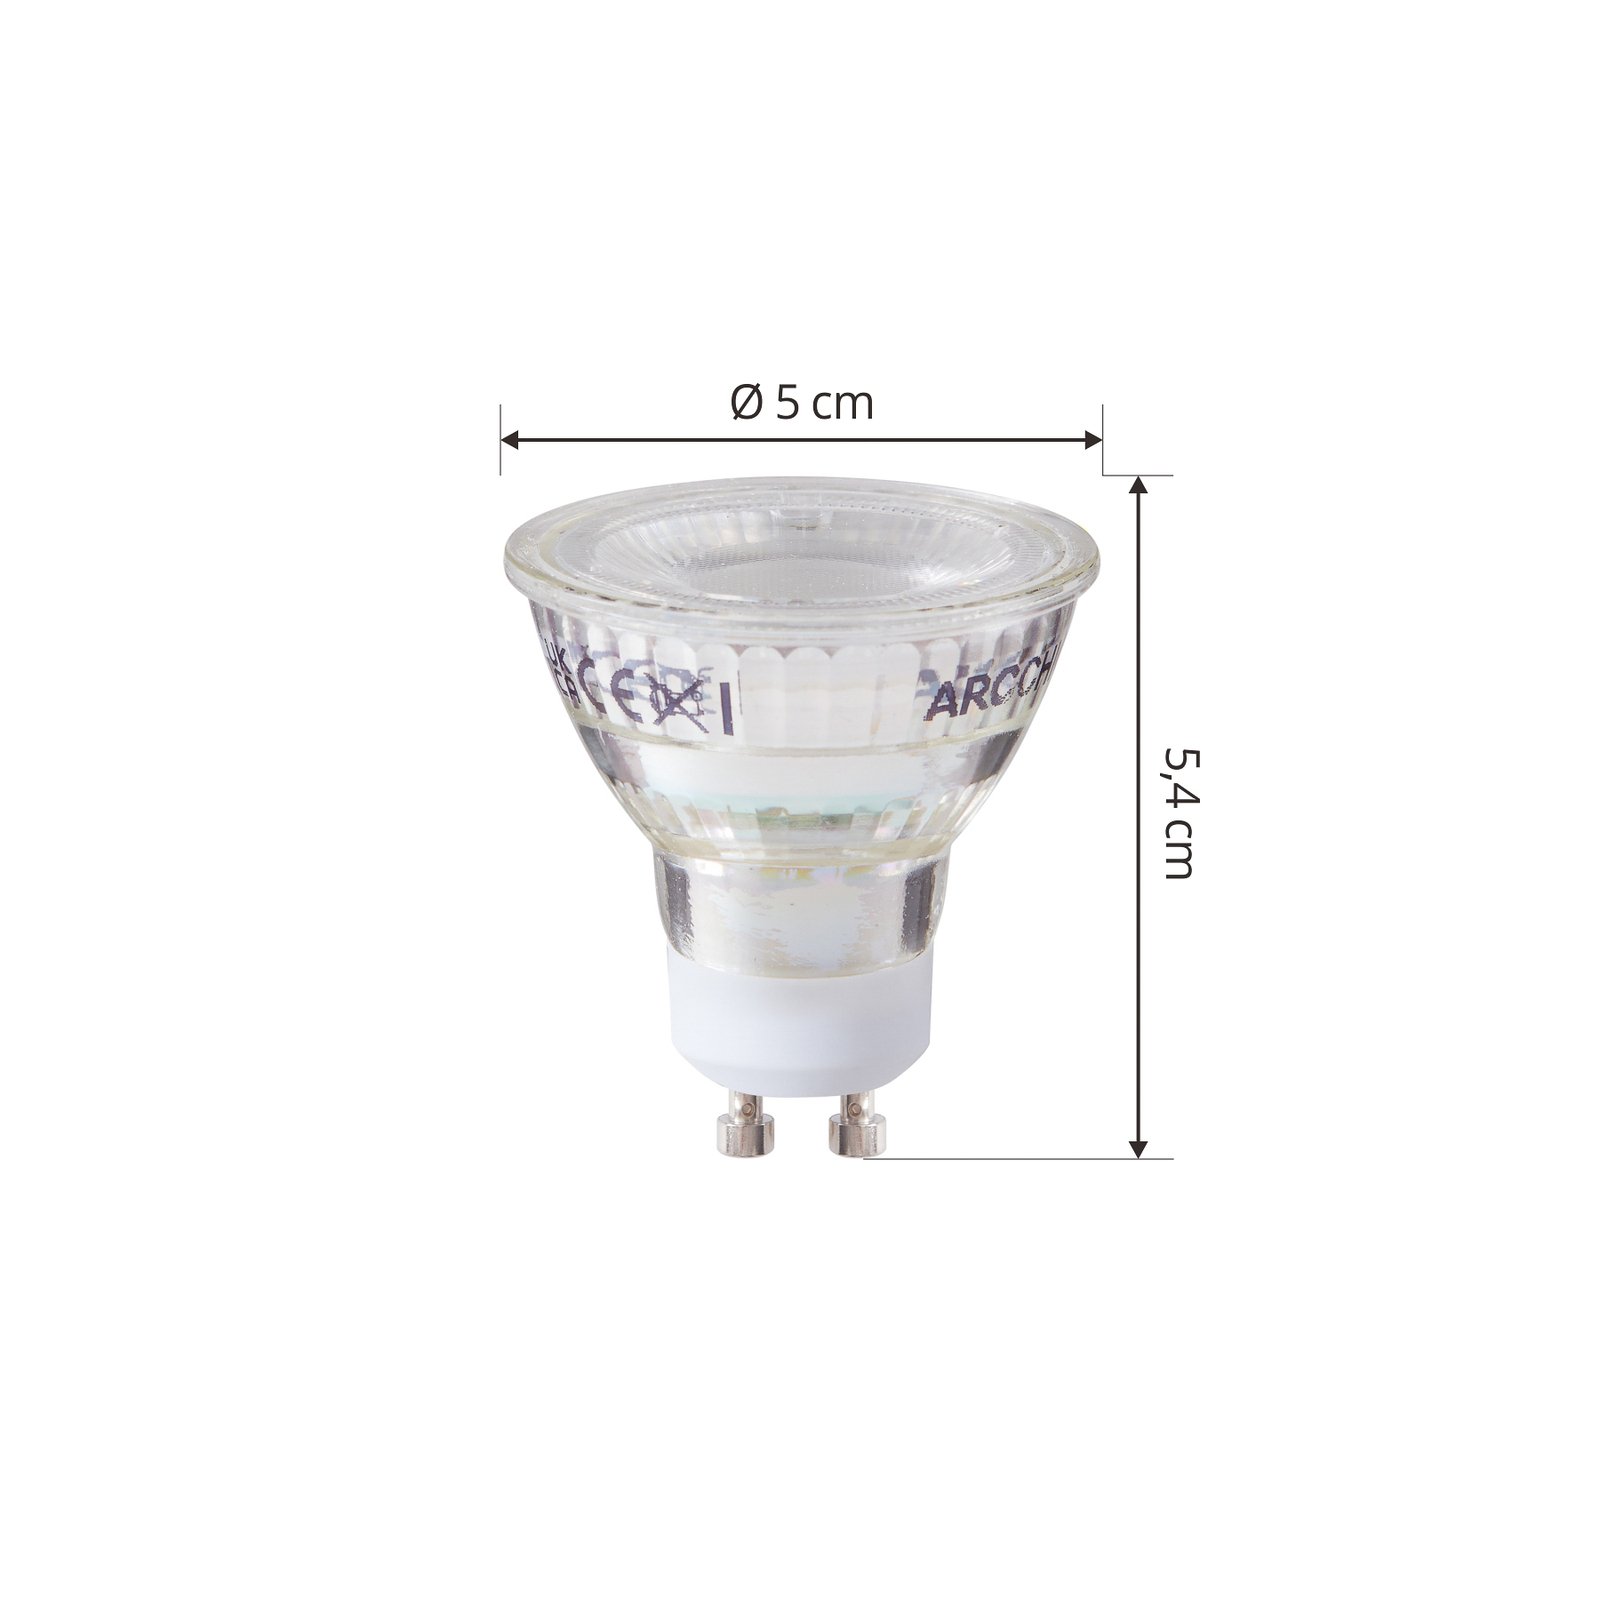 Arcchio LED-pære GU10 2,5W 6500K 450lm glass sett med 10 stk